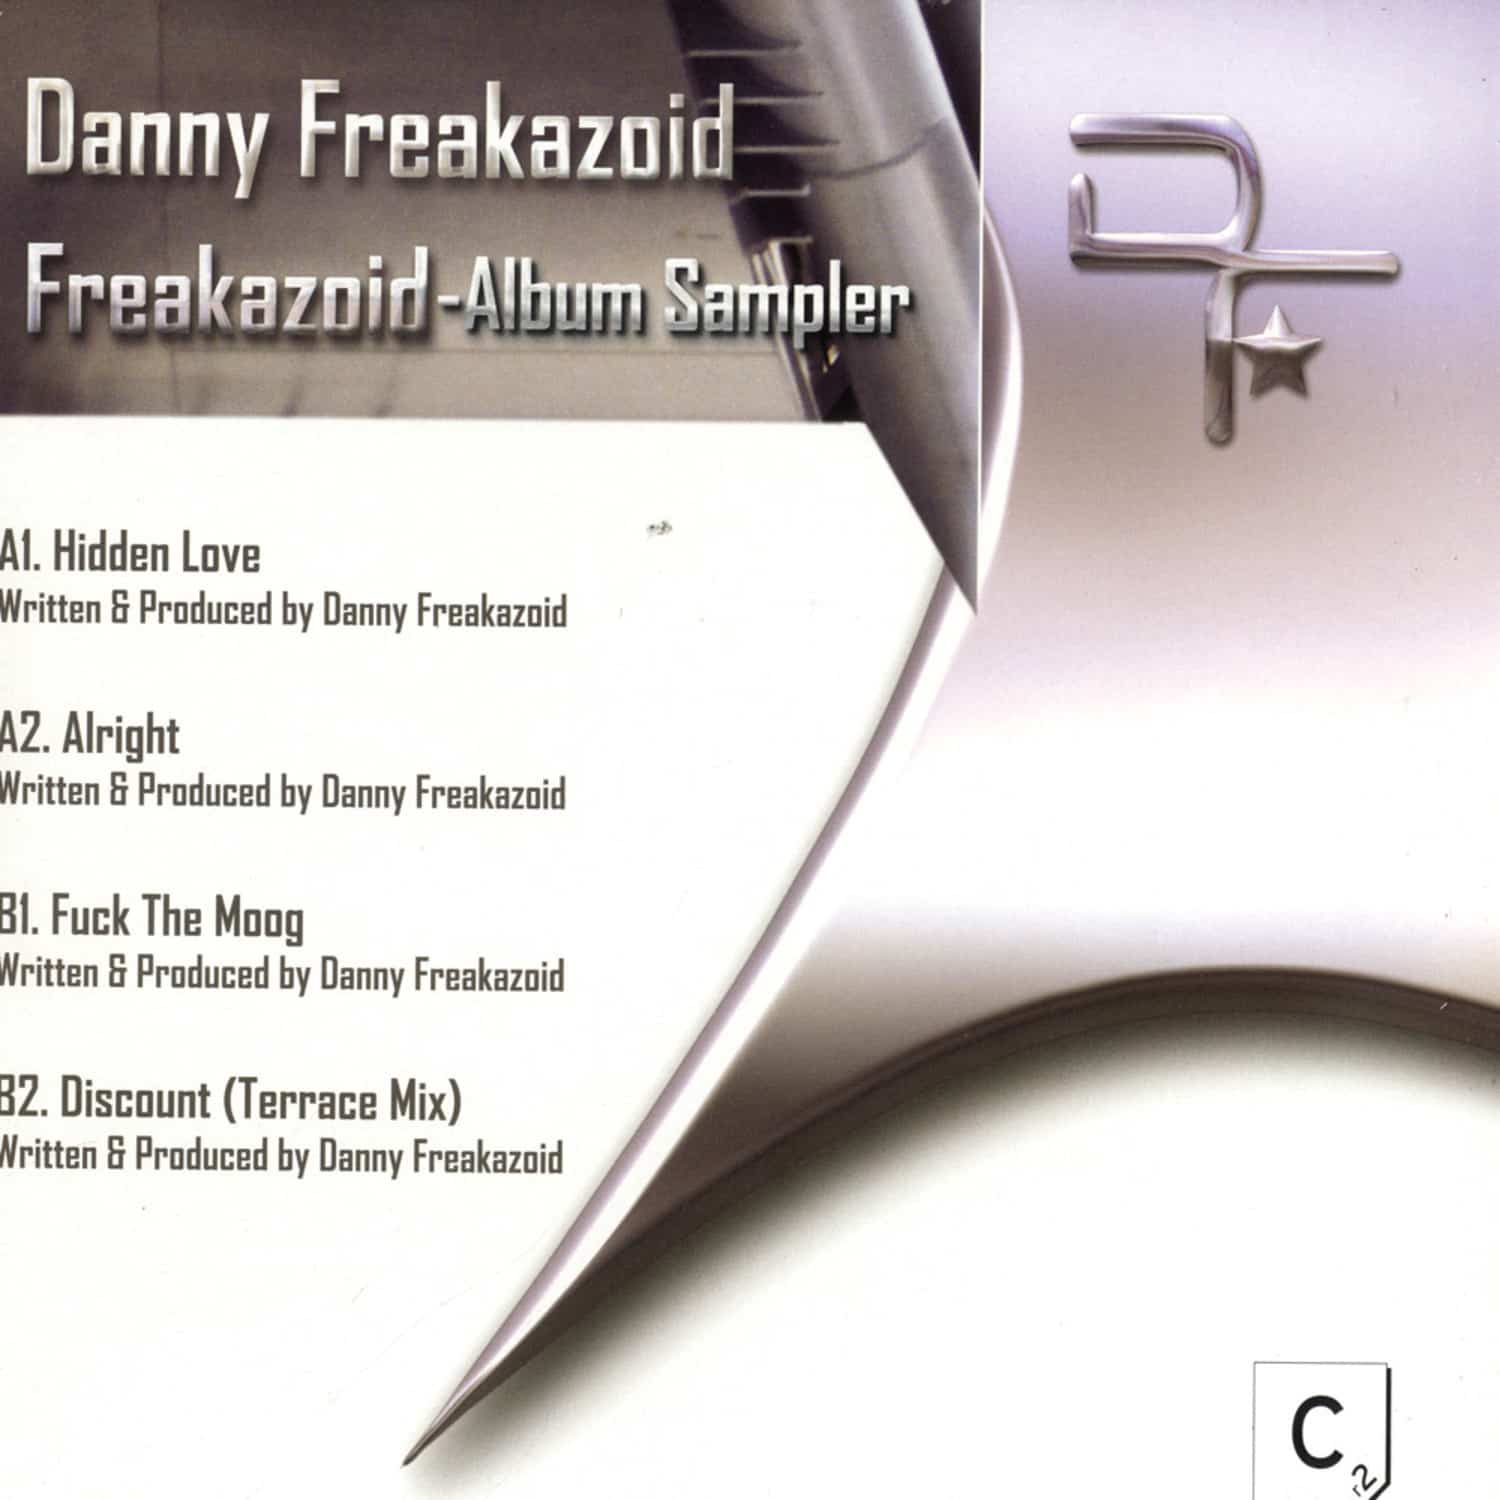 Danny Freakazoid - ALBUM SAMPLER